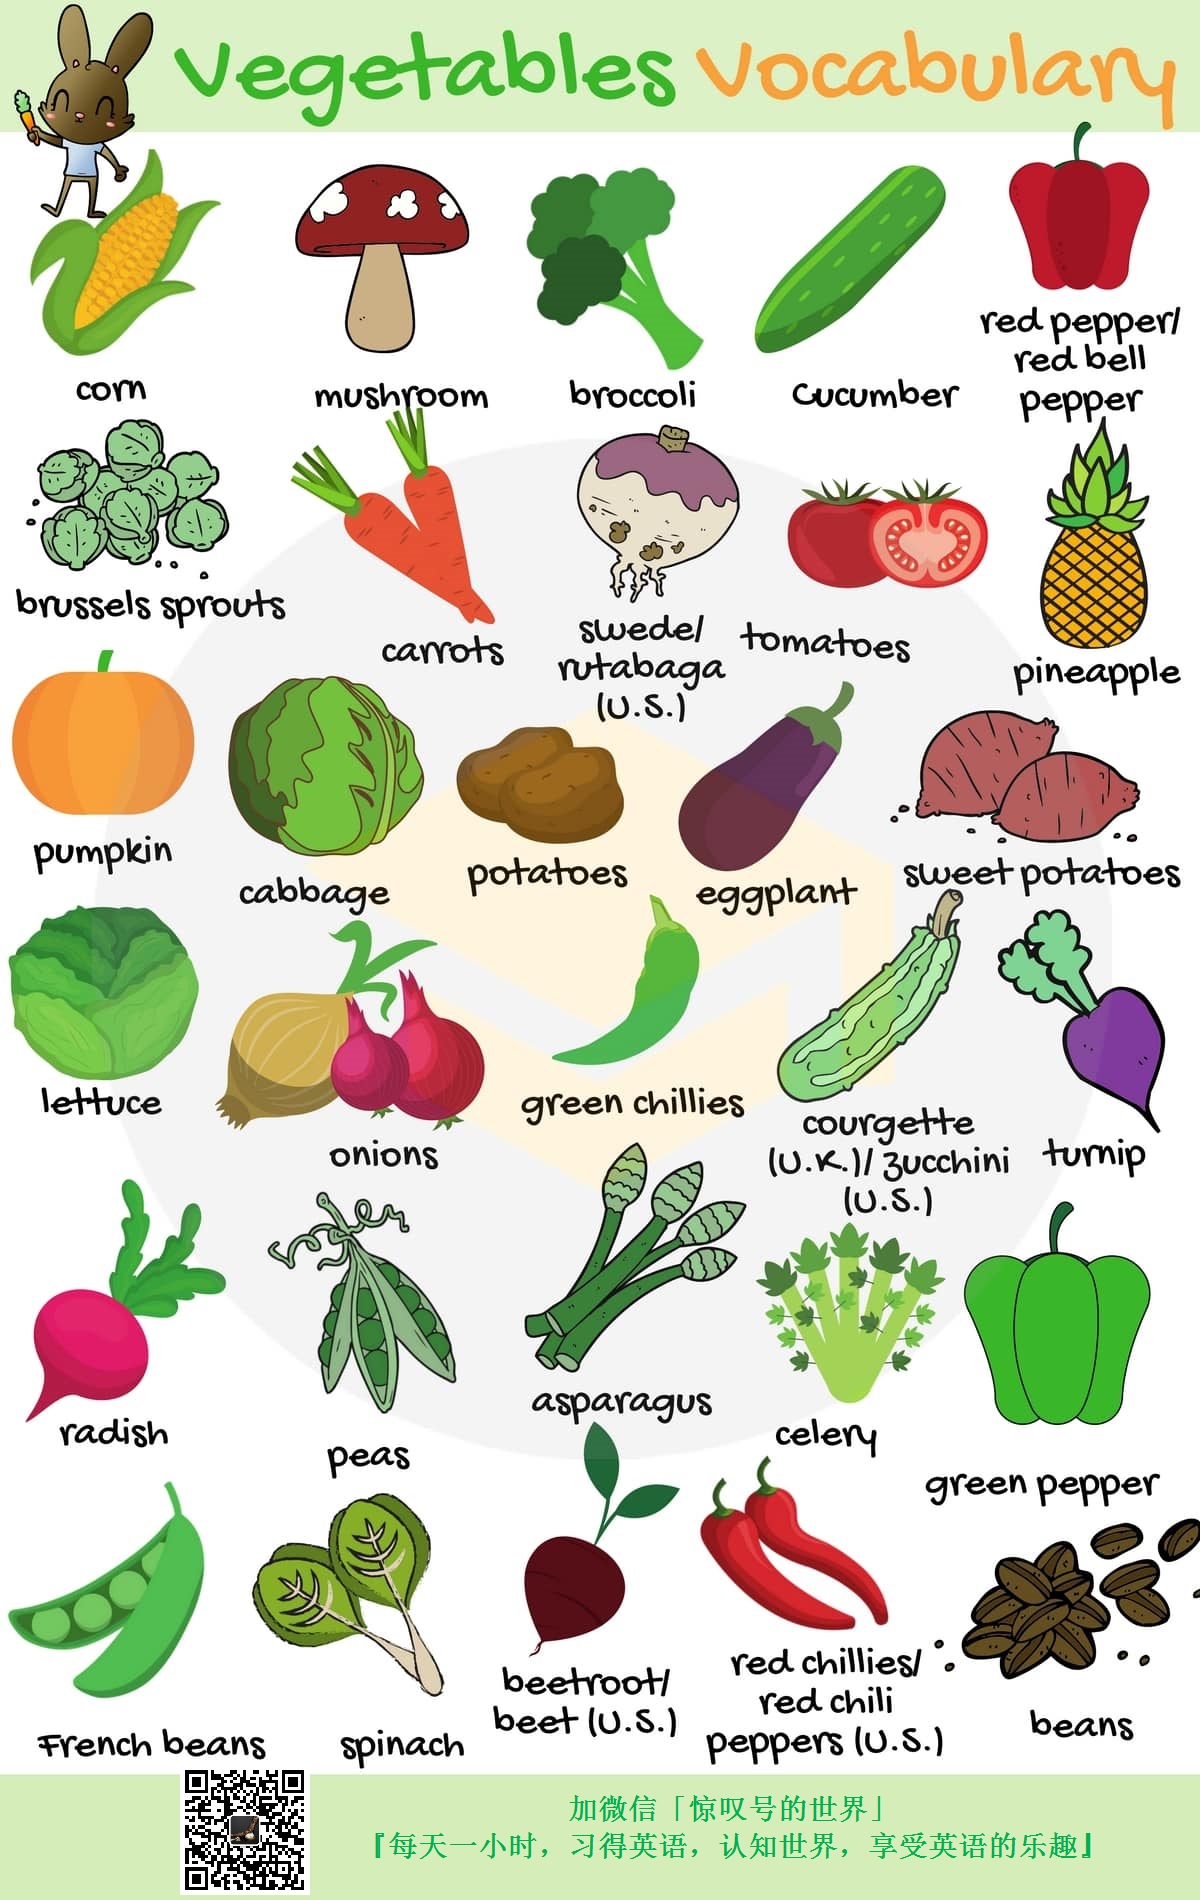 『英语/词汇』029期-蔬菜词汇图(vegetables)-跟着图片学英语